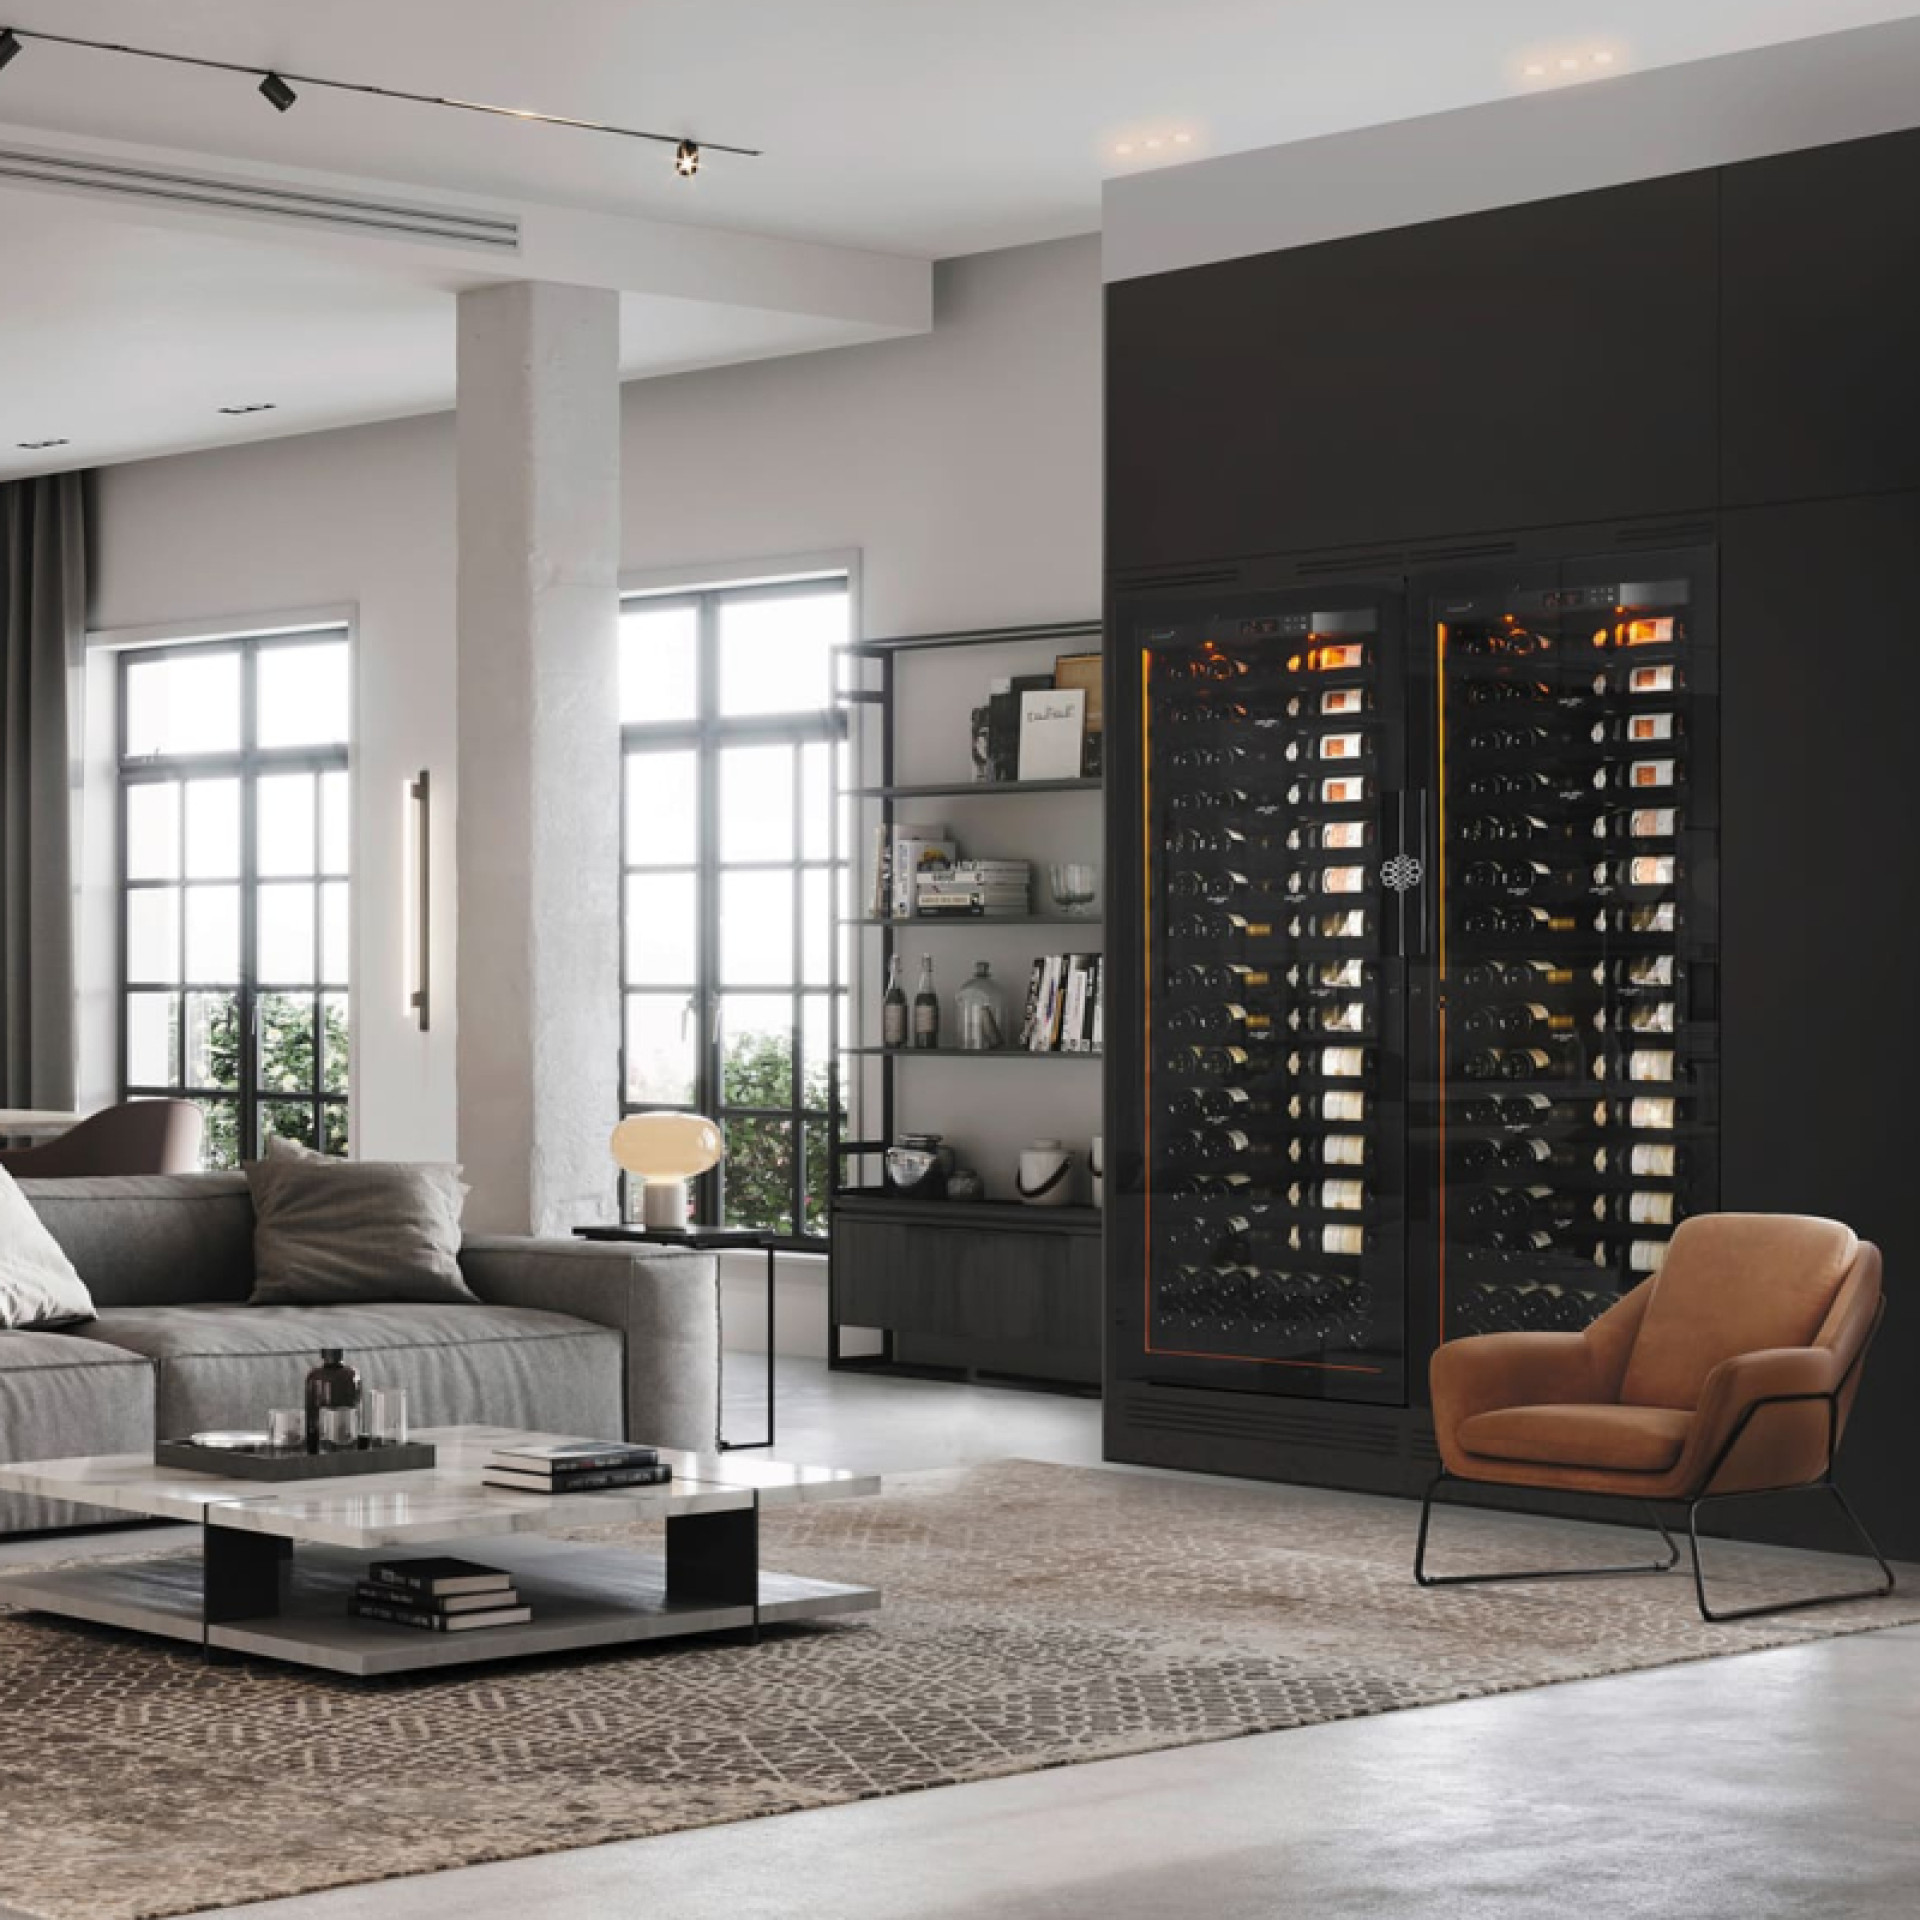 Große Weinkeller, integriert in einen maßgeschneiderten schwarzen Schrank in einem modernen Wohnzimmer mit Fronten aus schwarzen Regalen und integrierter Stimmungsbeleuchtung. - Revelation EuroCave